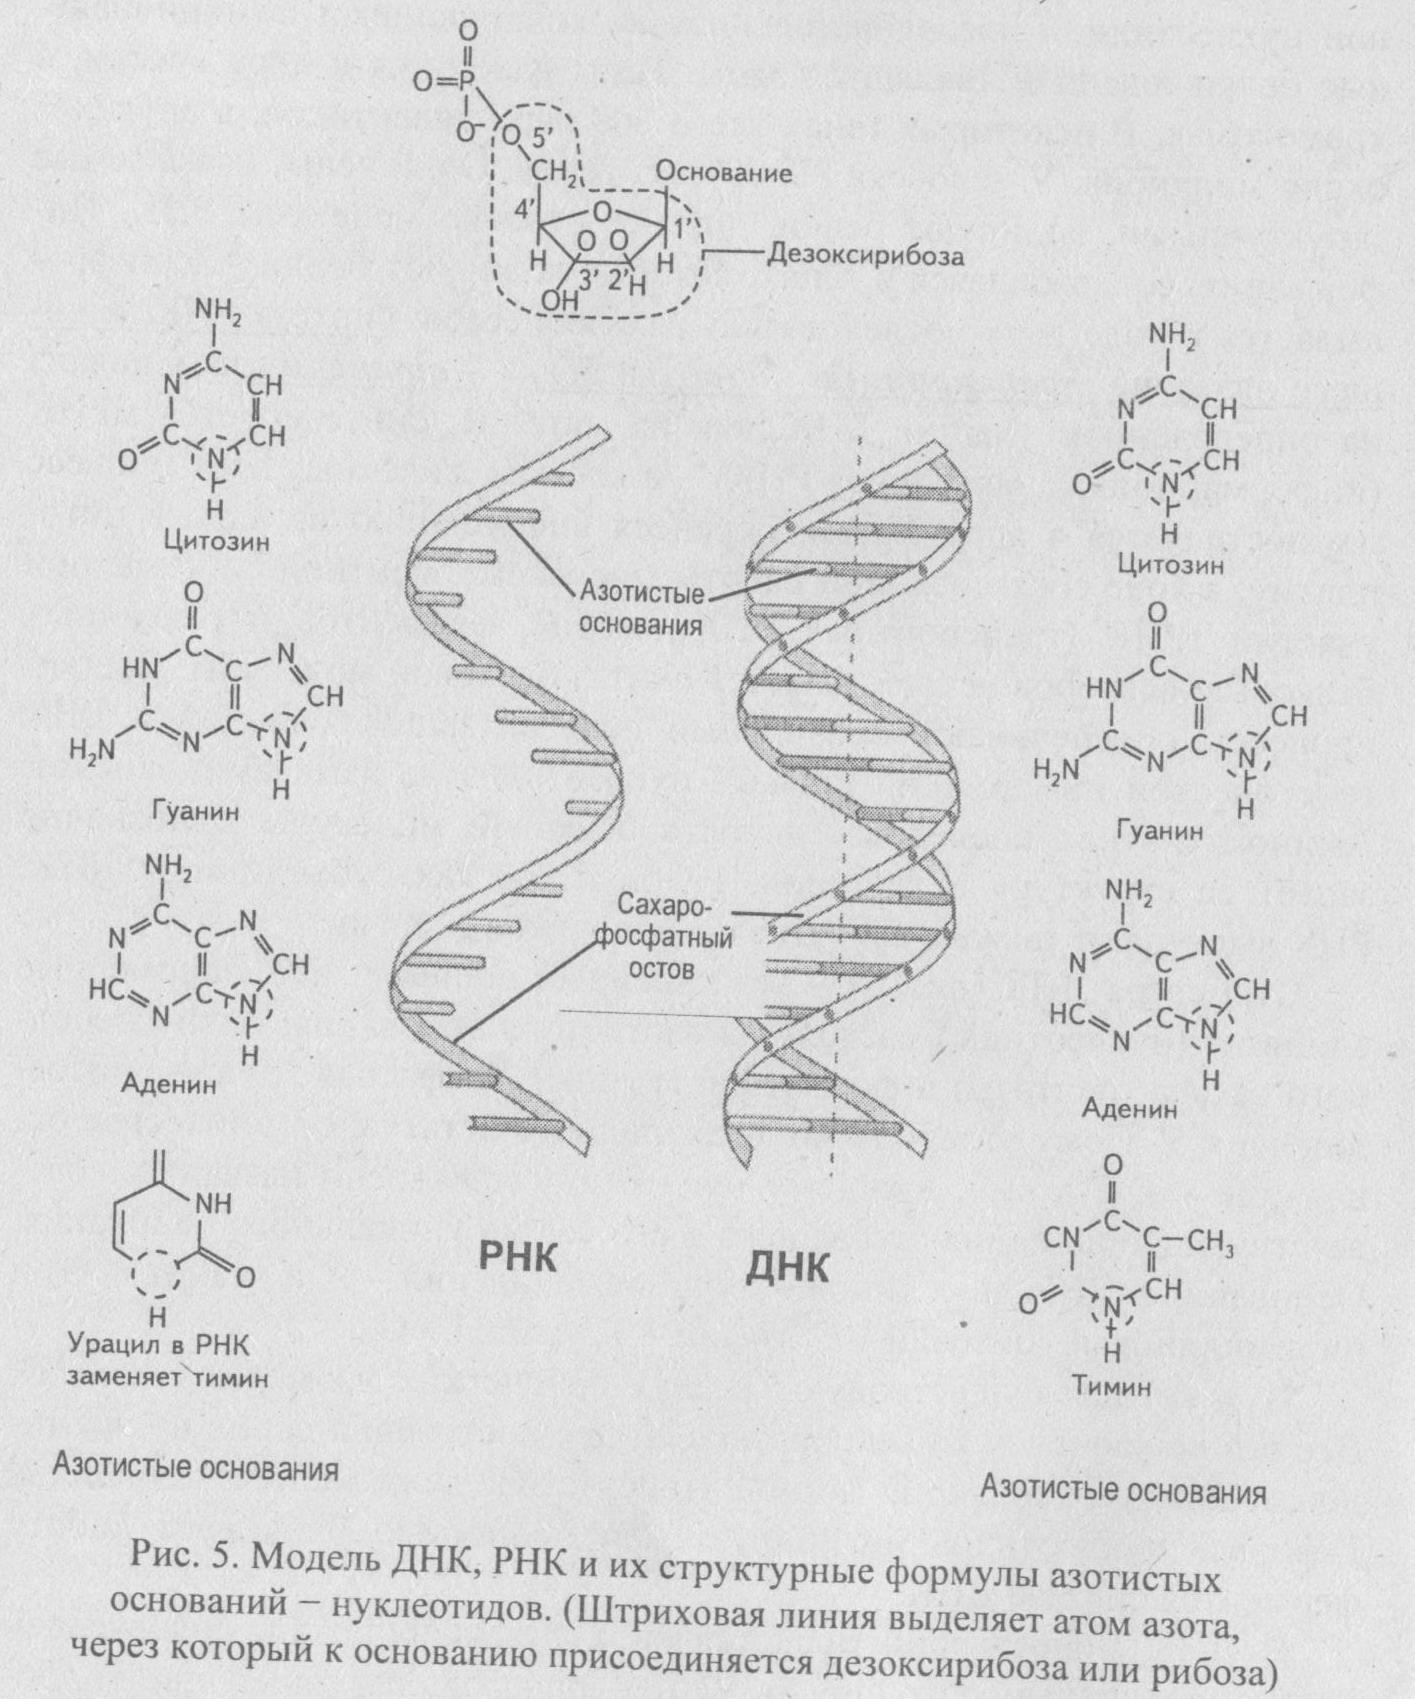 Состав азотистых оснований рнк. Азотистые основания ДНК И РНК формулы. ДНК РНК урацил. Азотистые основания ДНК И РНК. ДНК РНК аденин Тимин гуанин цитозин.